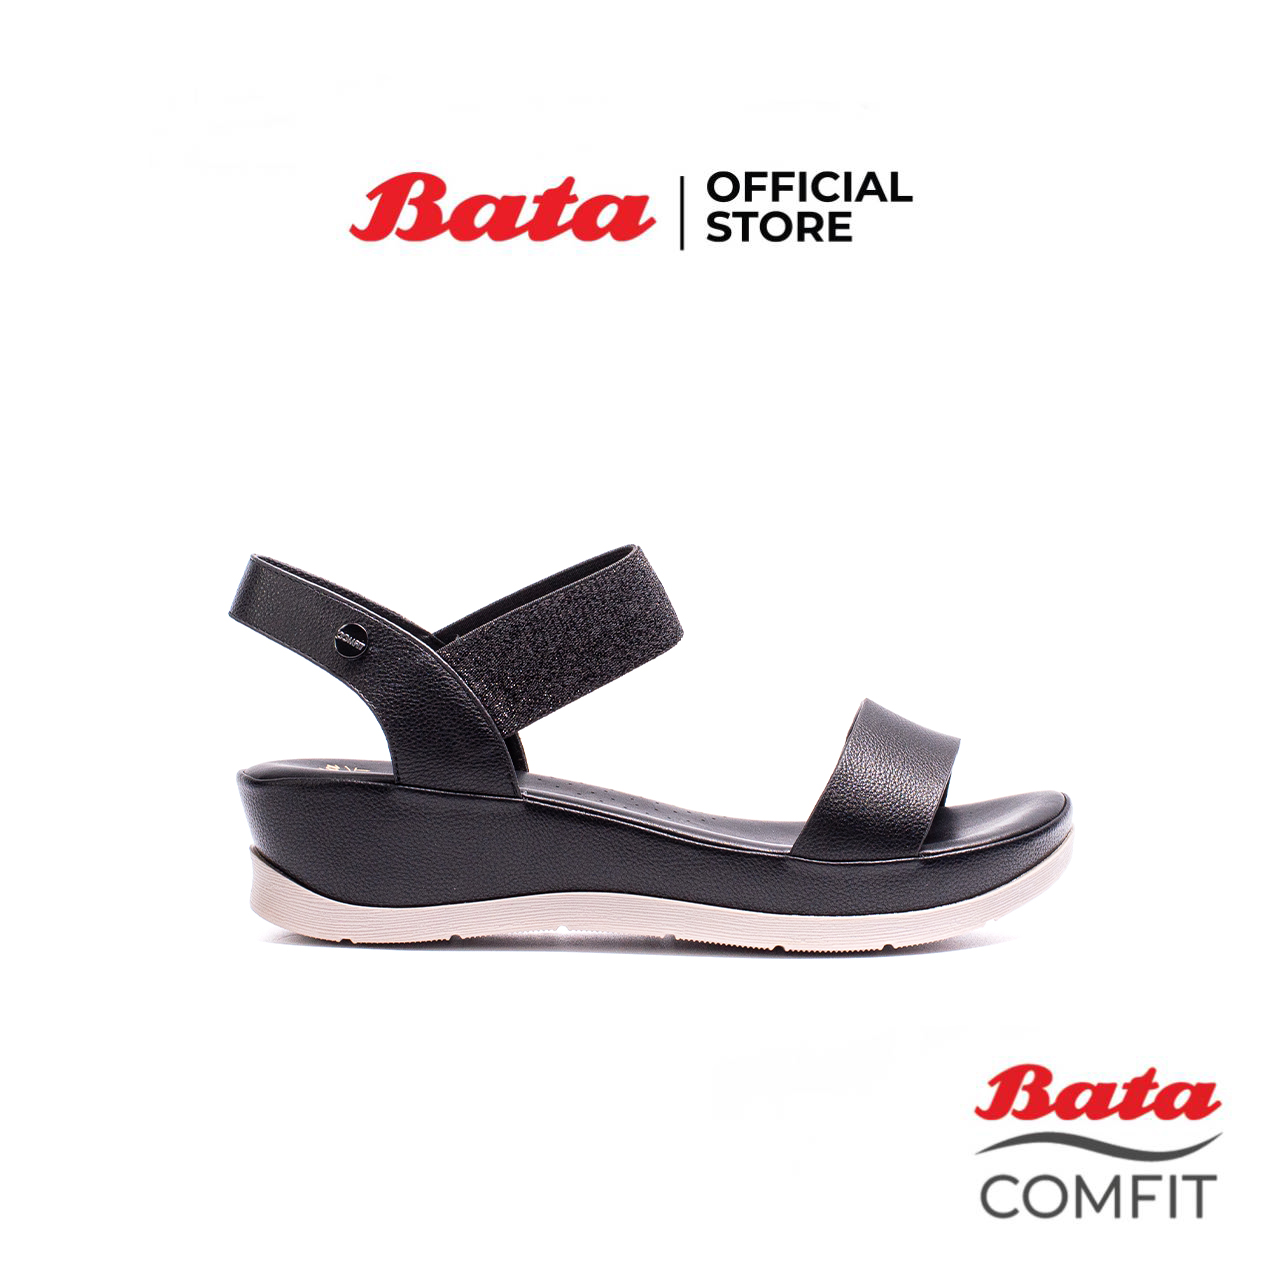 มุมมองเพิ่มเติมของสินค้า Bata Comfit บาจา คอมฟิต รองเท้าเพื่อสุขภาพ มีสายรัดส้น รองเท้าพื้นหนา สูง 1 นิ้ว สำหรับผู้หญิง รุ่น Caddy สีดำ 6616239